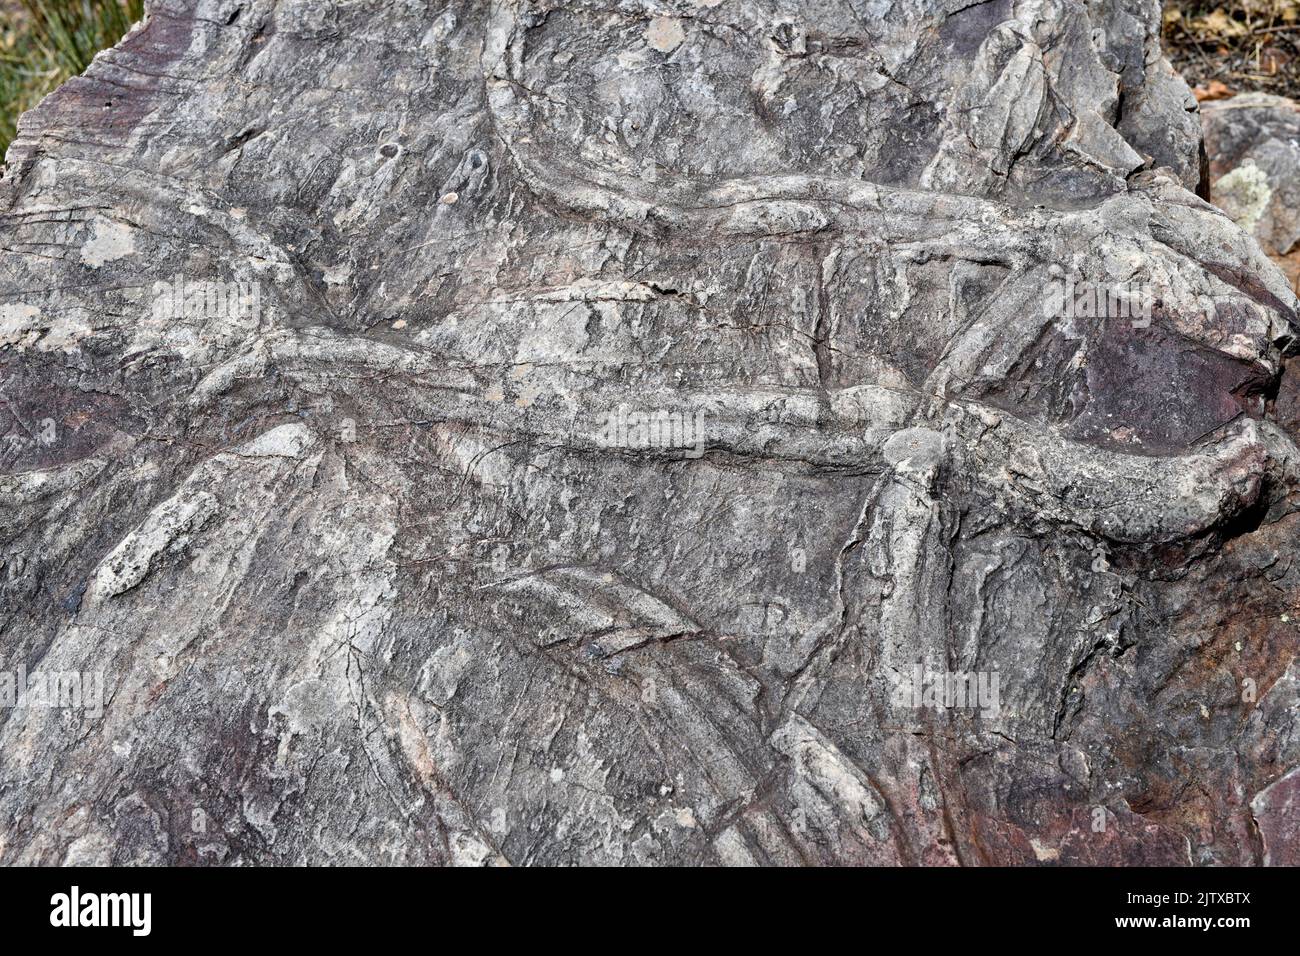 Cruziana (ichnofacies) est un assemblage de traces marines de fossiles formées par l'activité des trilobites. Cette photo a été prise à Penha Garcia, Portugal. Banque D'Images